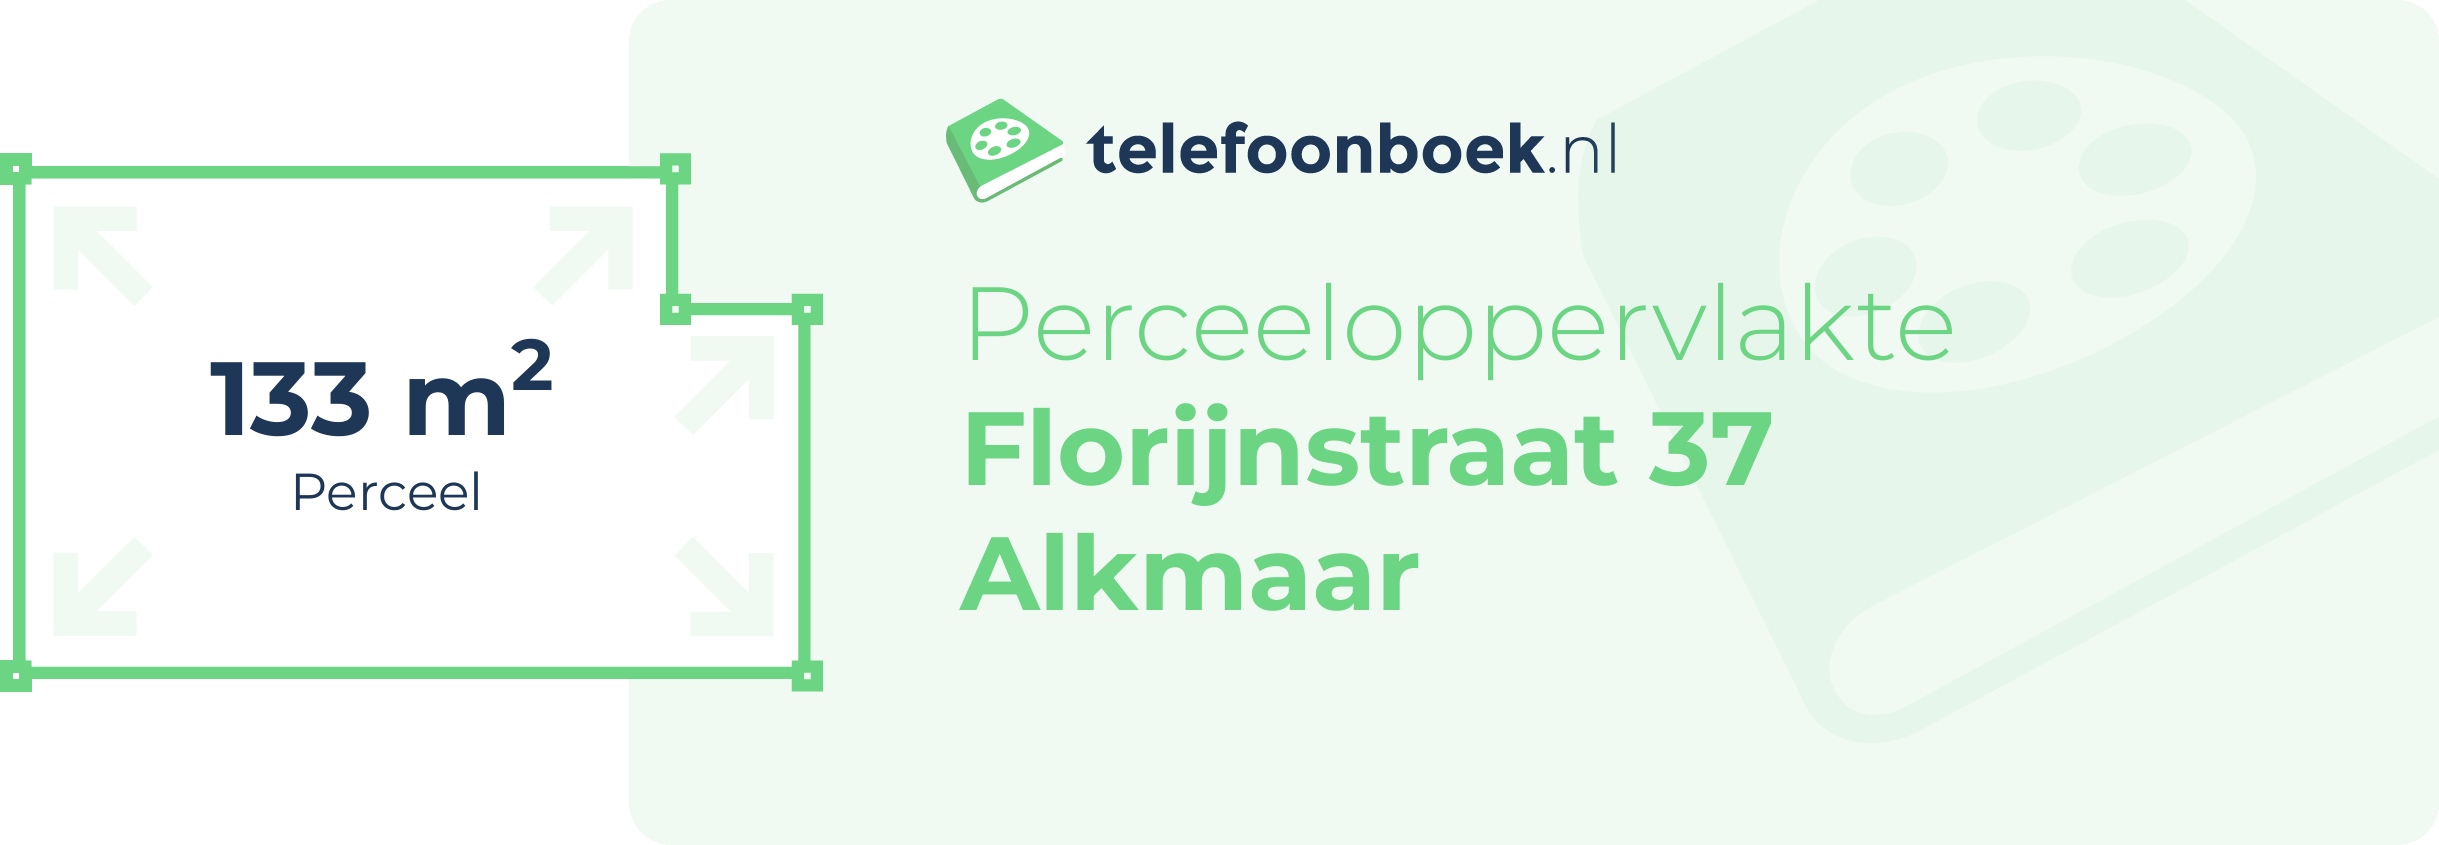 Perceeloppervlakte Florijnstraat 37 Alkmaar